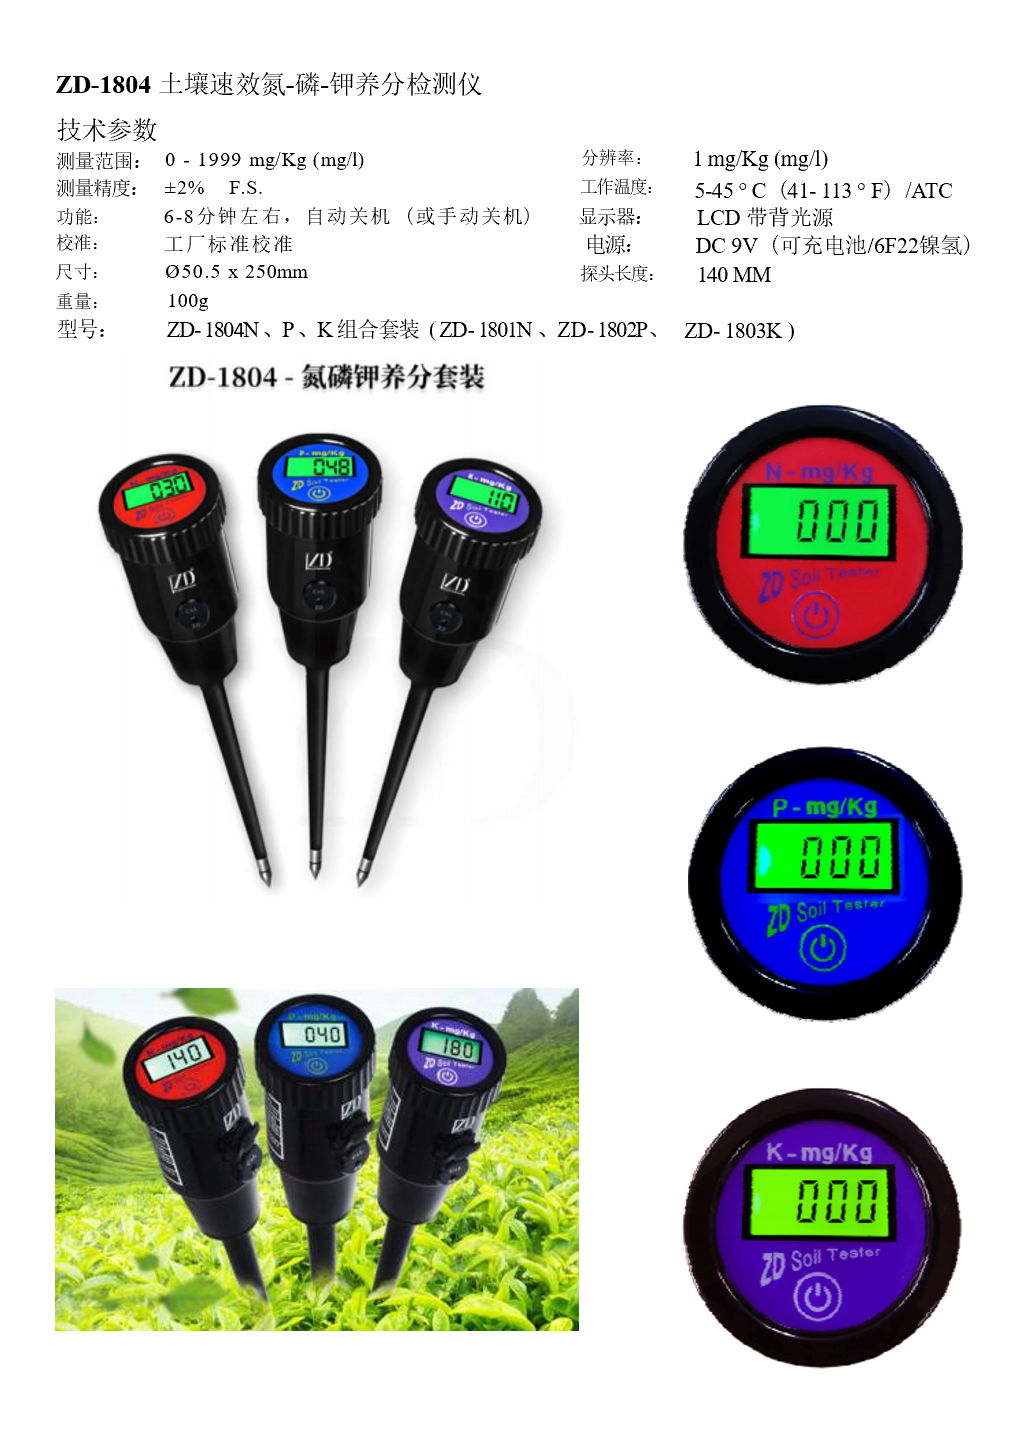 ZD-6000 Soil Nutrient & Heavy Metal Tester (11 in 1) 3